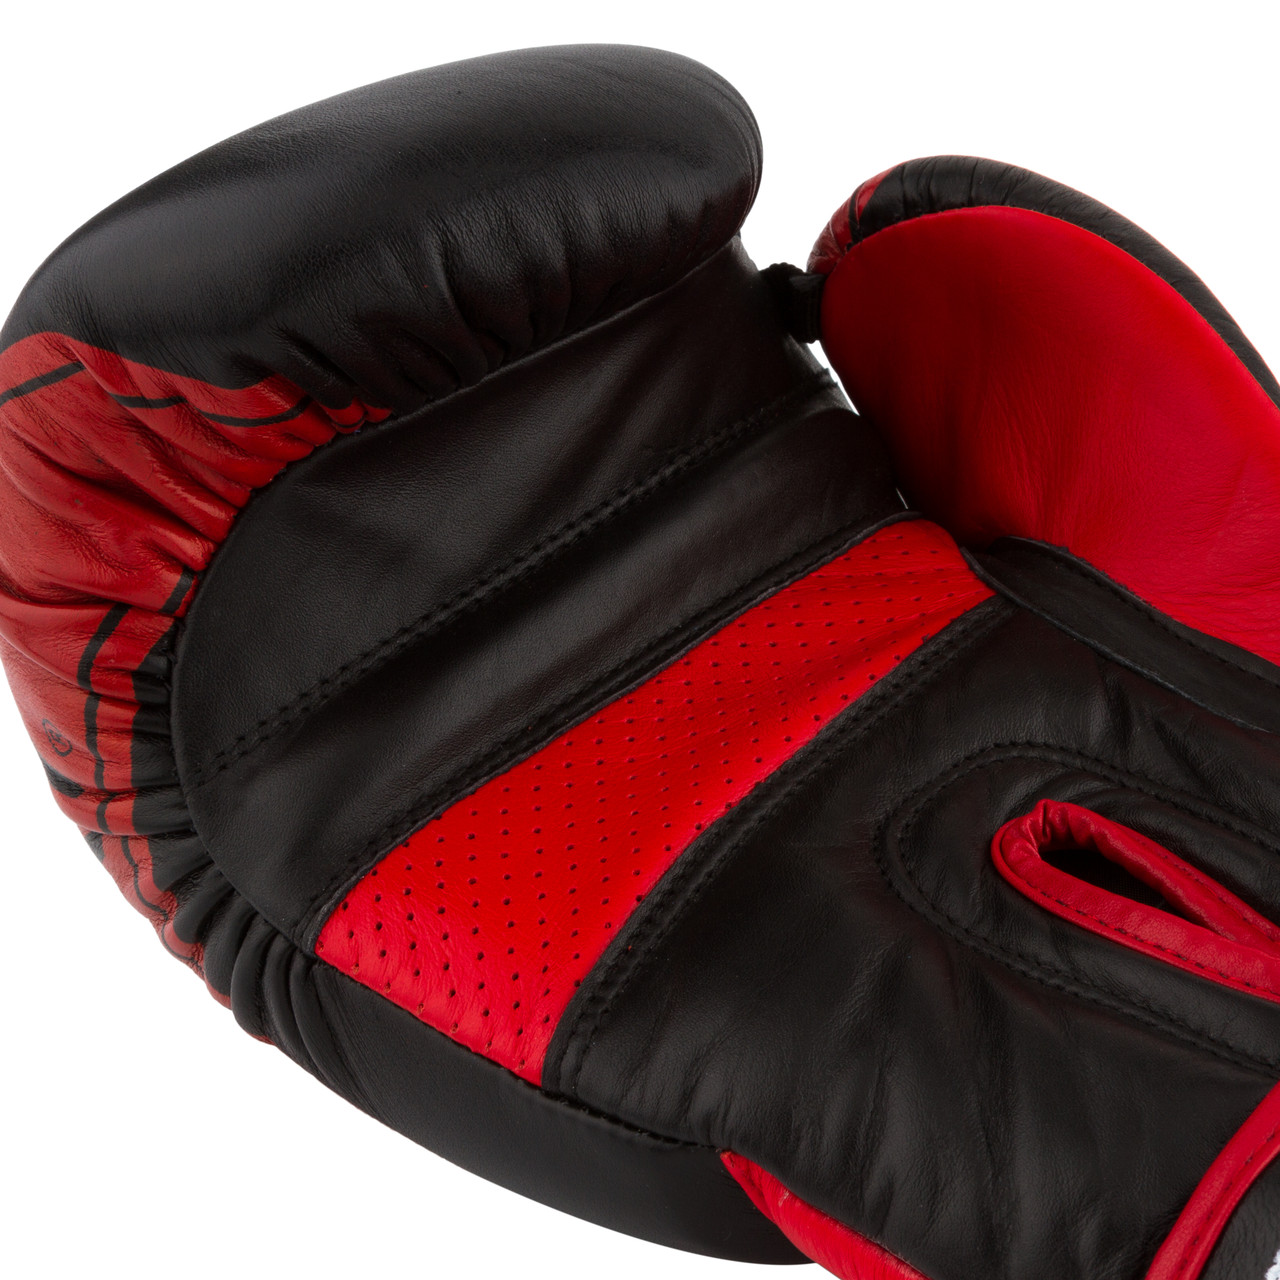 Боксерські рукавички PowerPlay 3023 A чорно-червоні (натуральна шкіра) 10 унцій